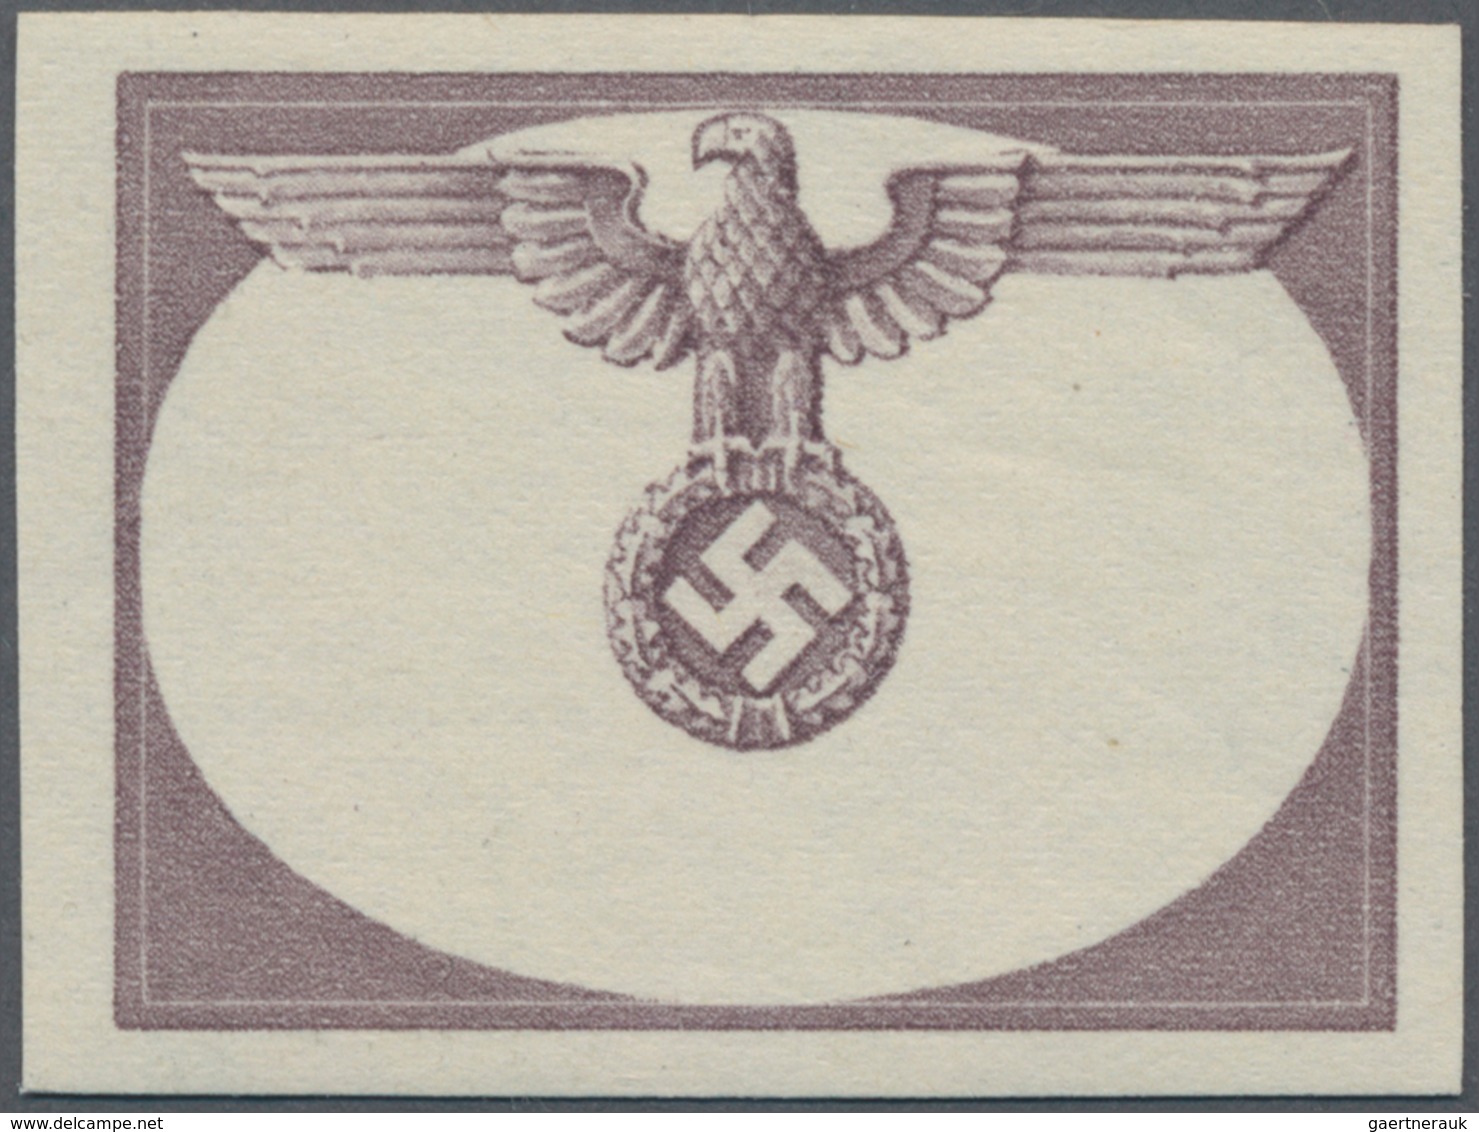 Dt. Besetzung II WK - Generalgouvernement - Dienstmarken: 1940, (1) Zl. Probedruck Als Phasendruck D - Occupation 1938-45